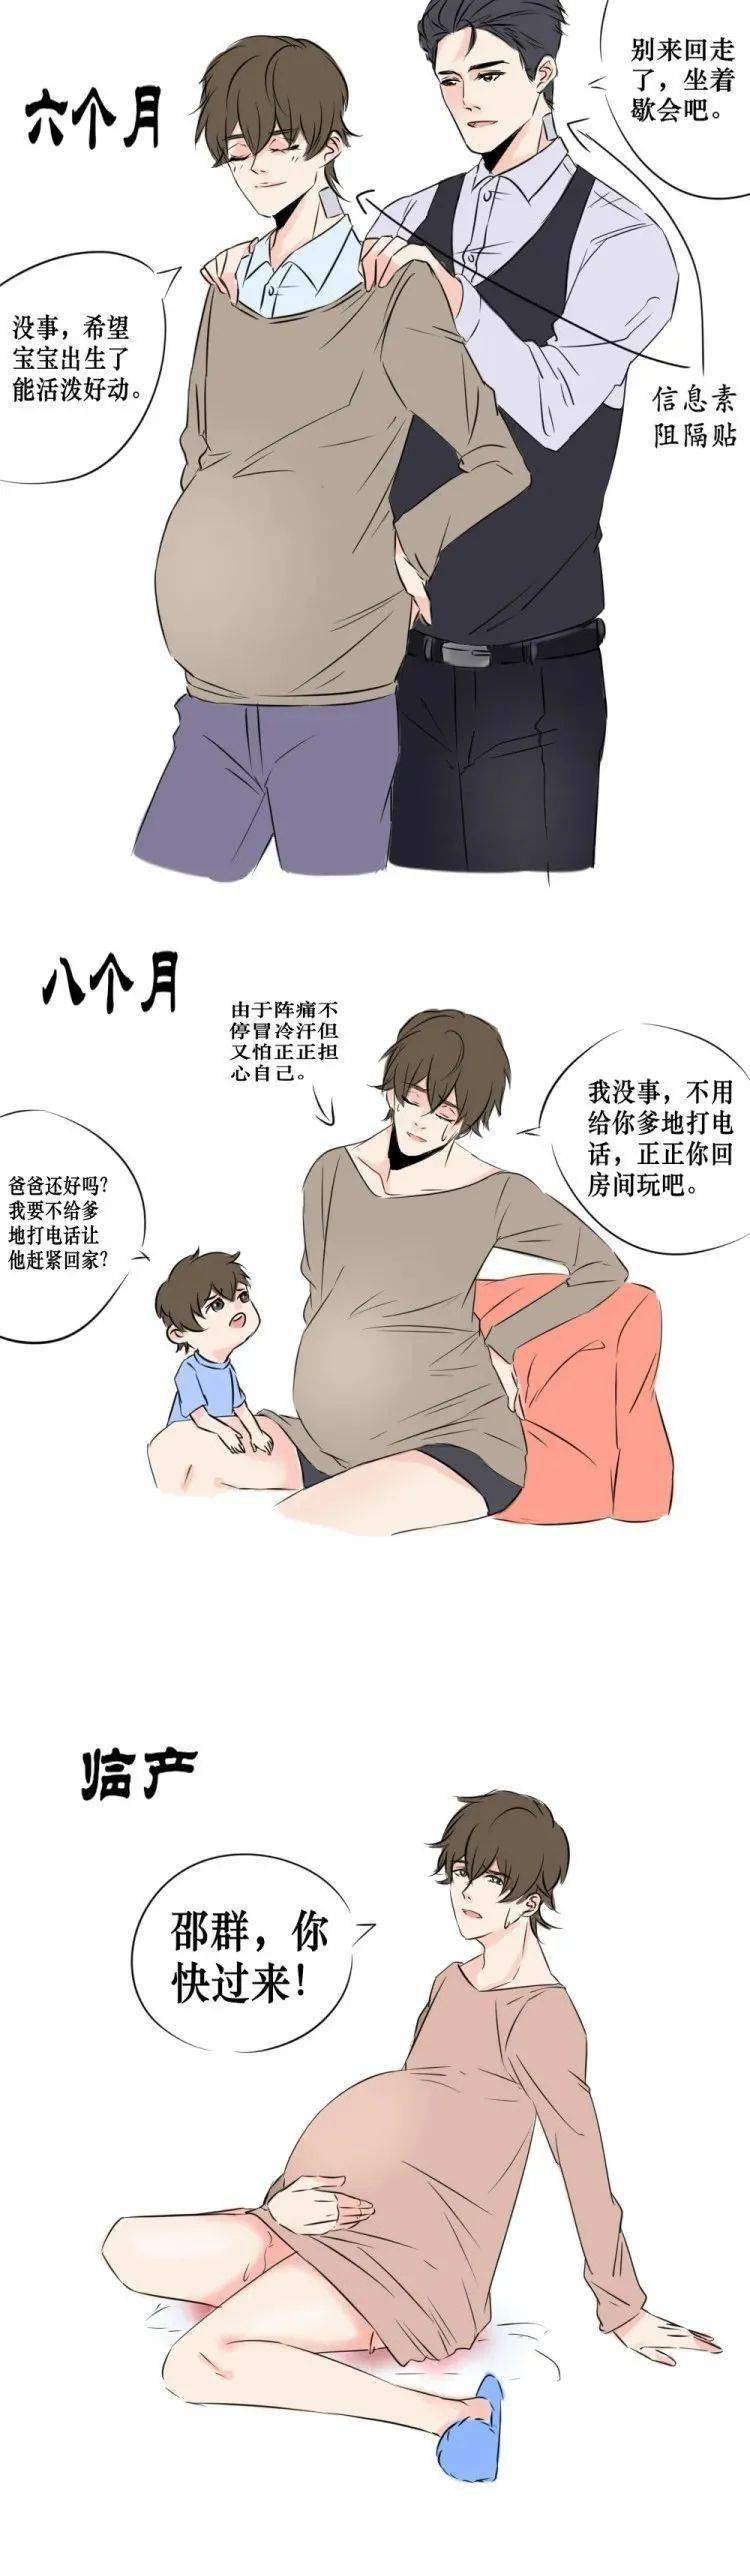 【188男团】abo孕期~男妈妈秀秀